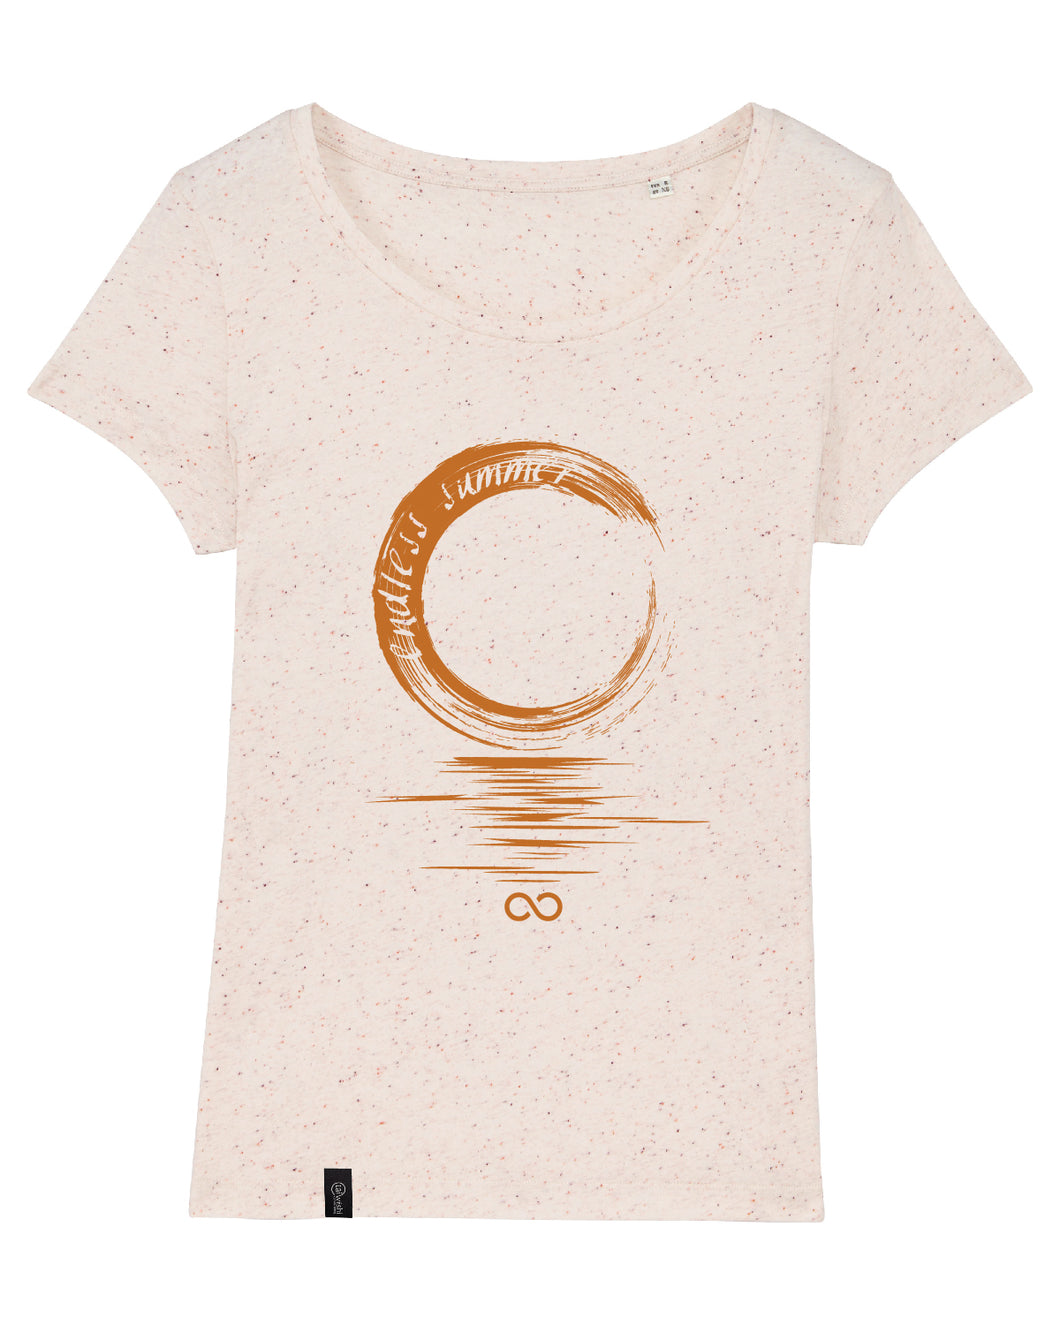 ENDLESS SUMMER | Damen-Shirt organic